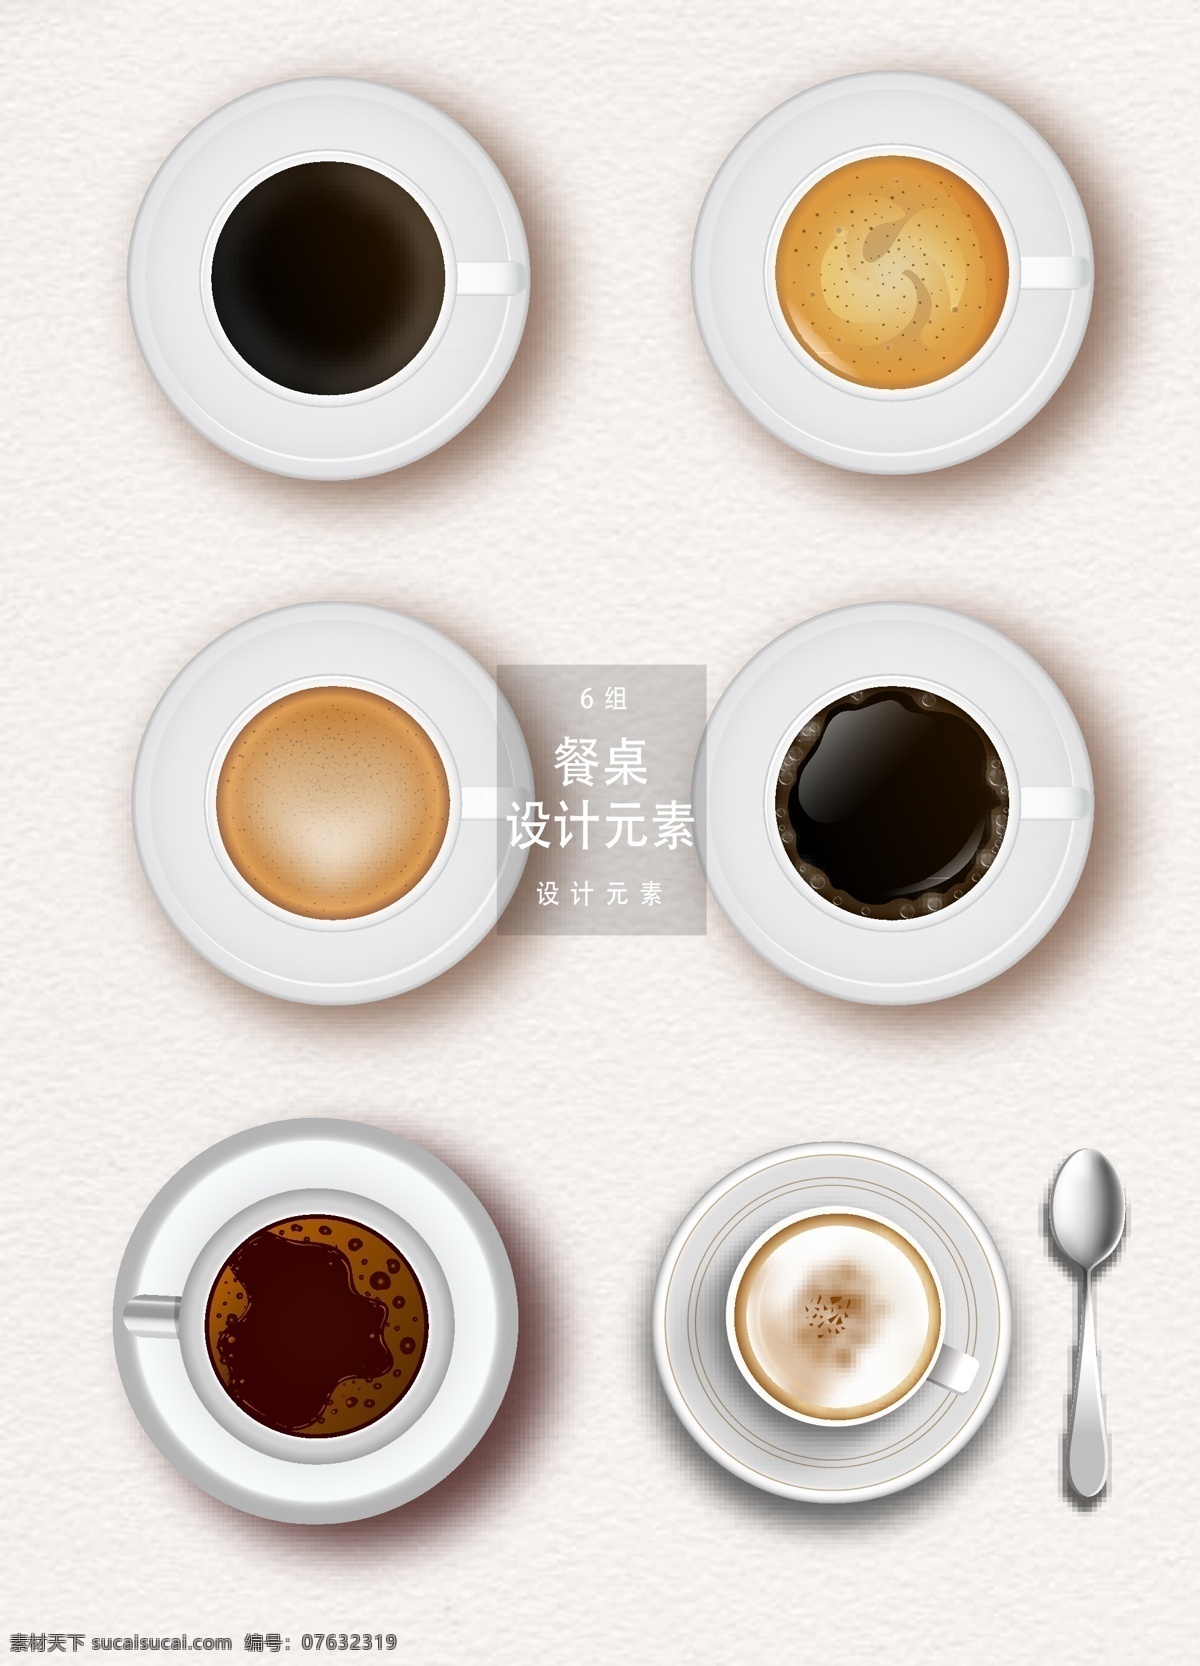 咖啡 俯视图 元素 咖啡素材 咖啡杯 饮料 矢量素材 ai素材 咖啡俯视图